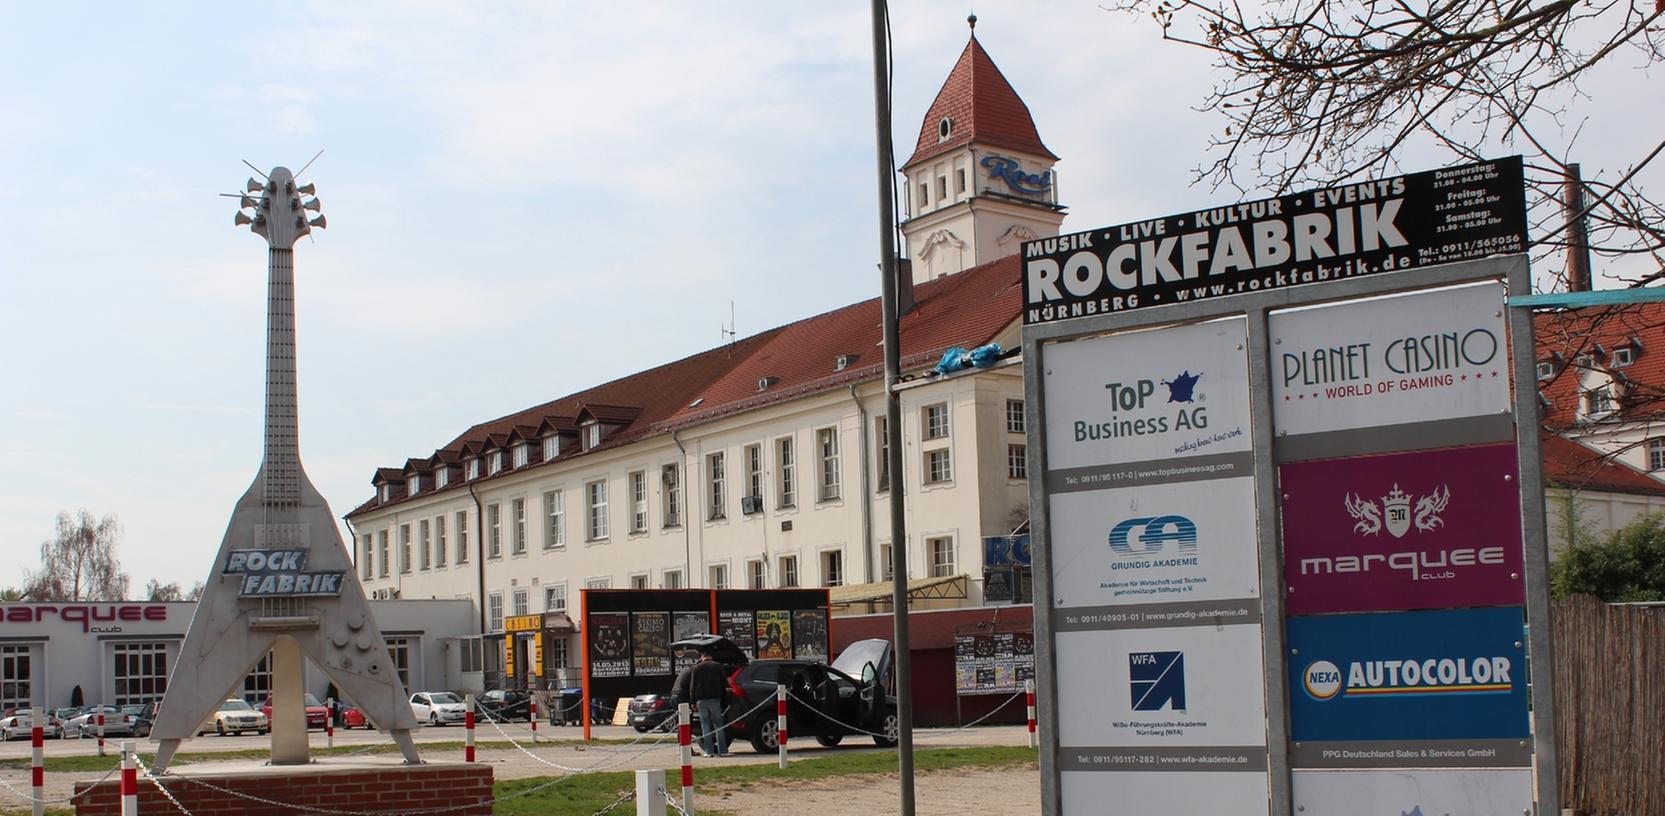 Die Betreiber des "Won" haben Interesse an dem Gebäude angemeldet, in dem derzeit noch die Rockfabrik untergebracht ist. Die Anwohner am Klingenhof befürchten noch mehr Lärm.